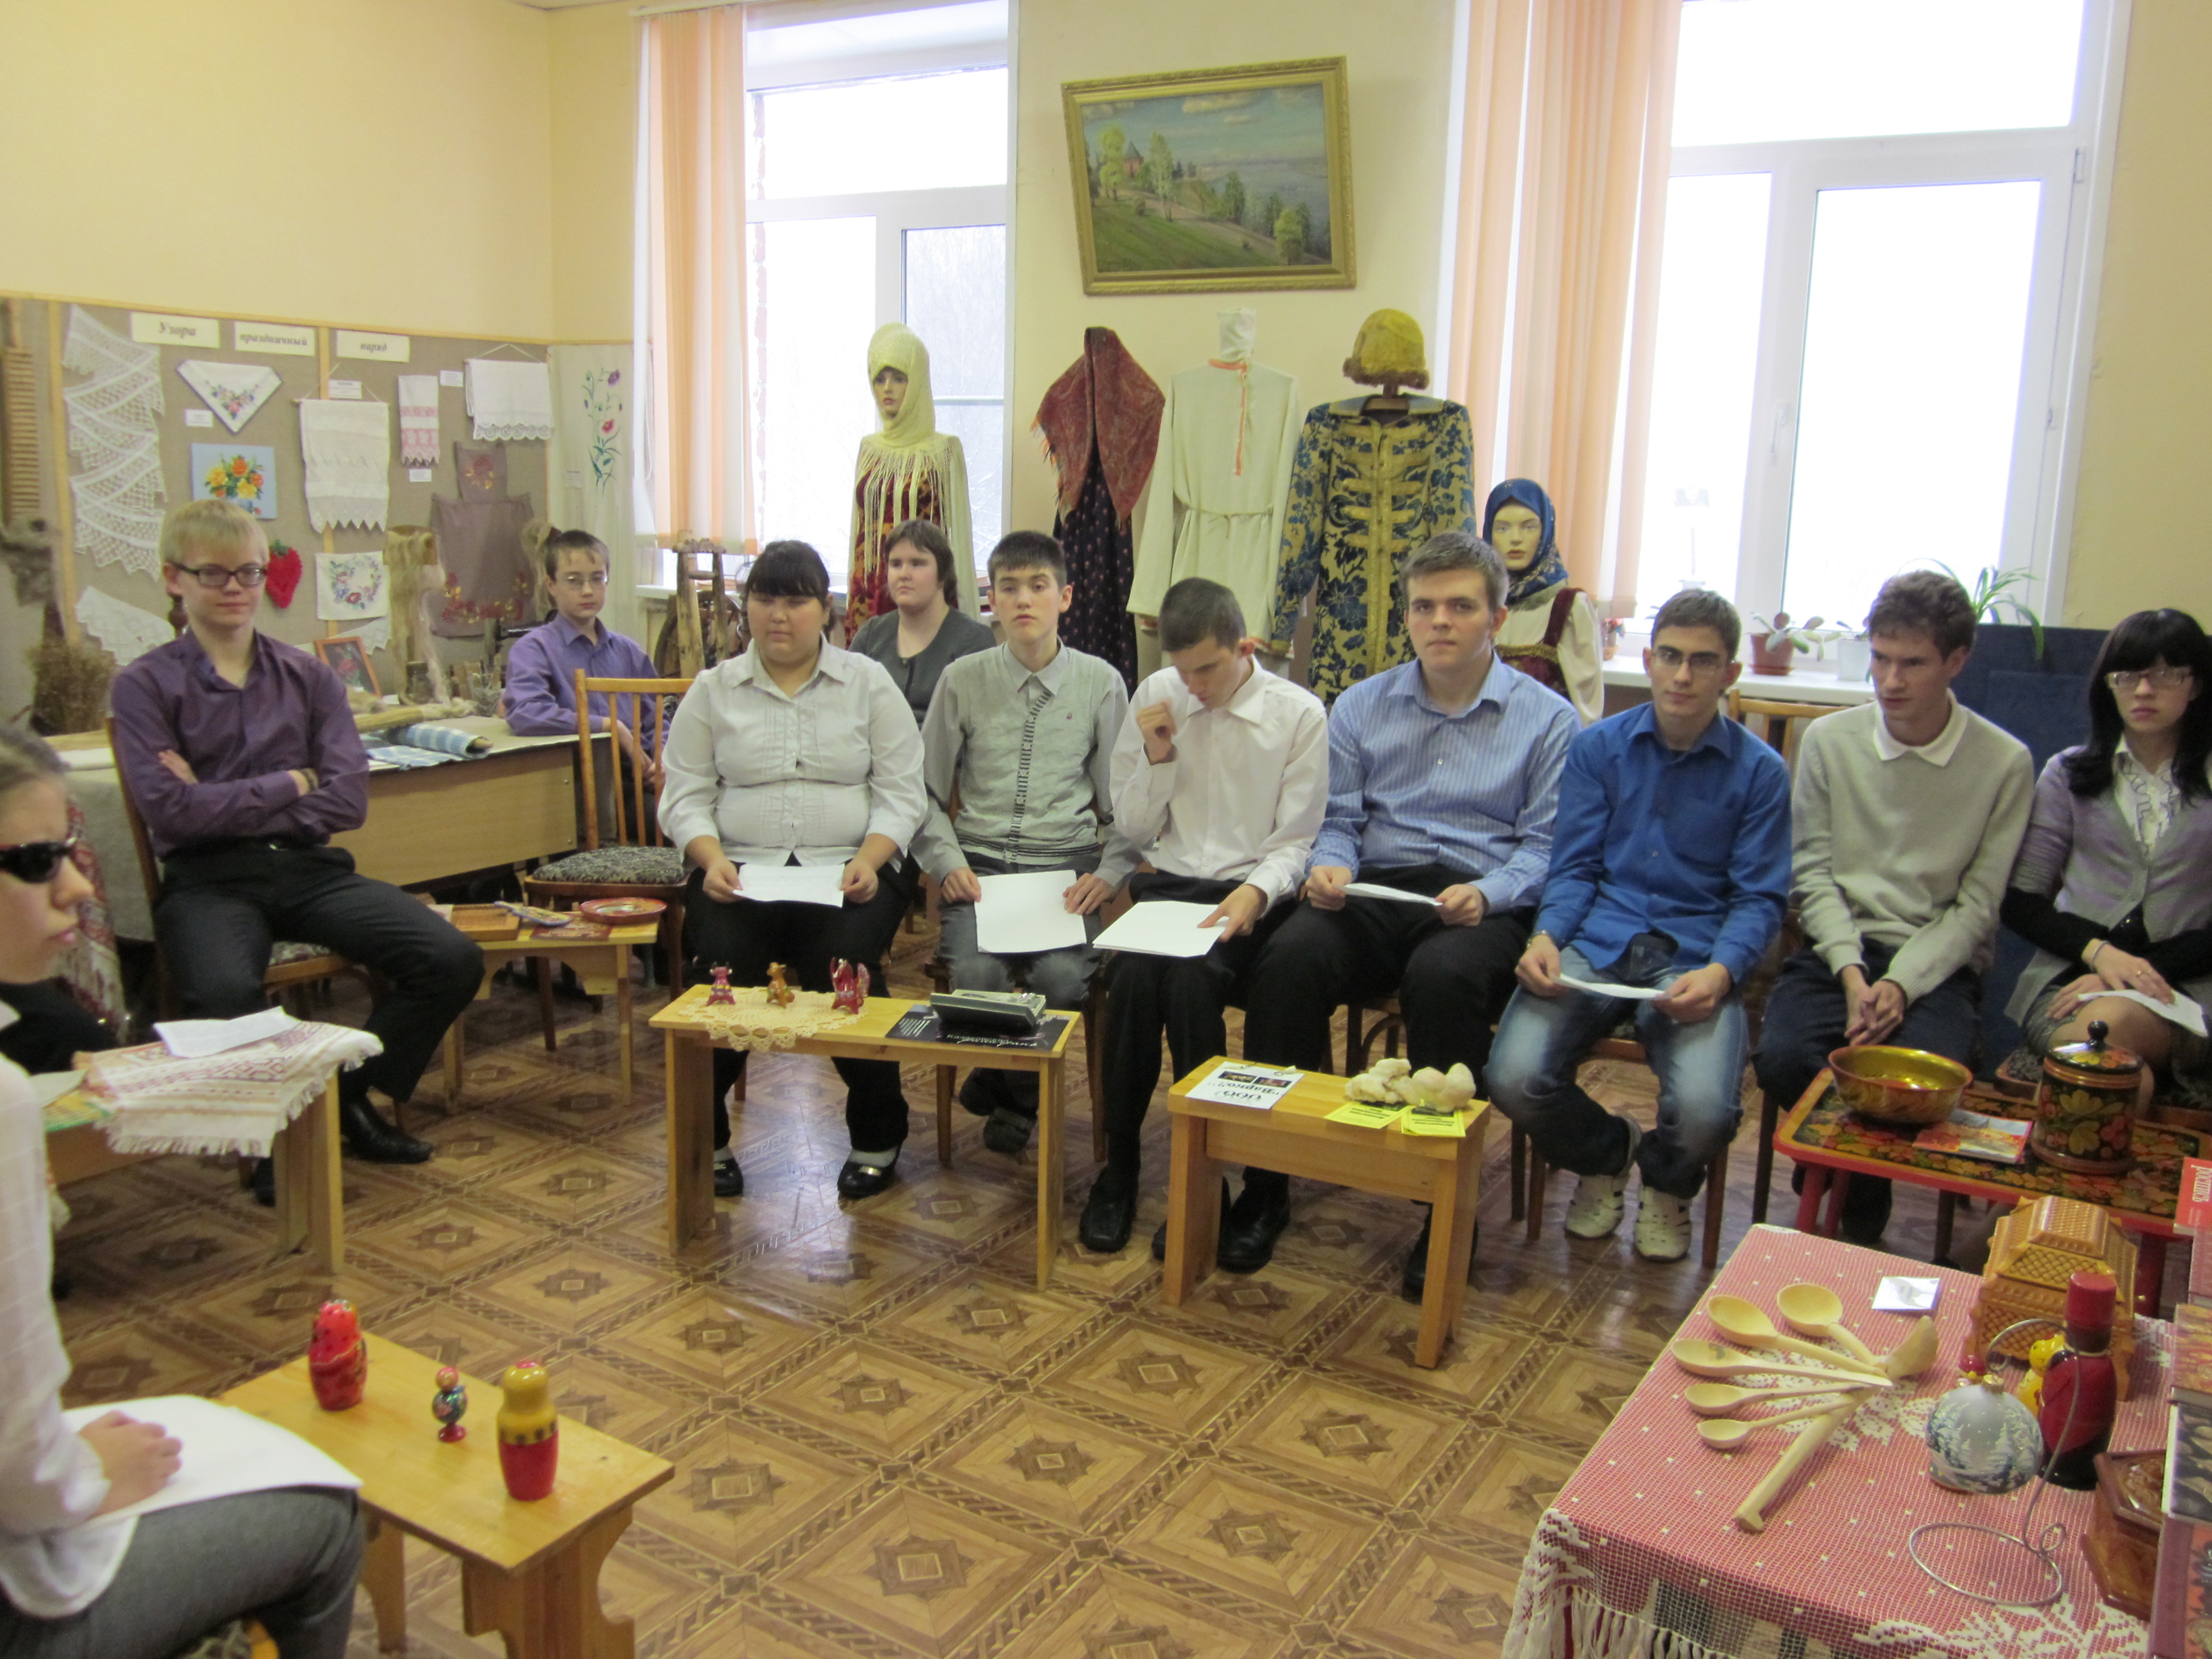 Разработка урока по географии на тему Народные промыслы Нижегородской области (9 класс)